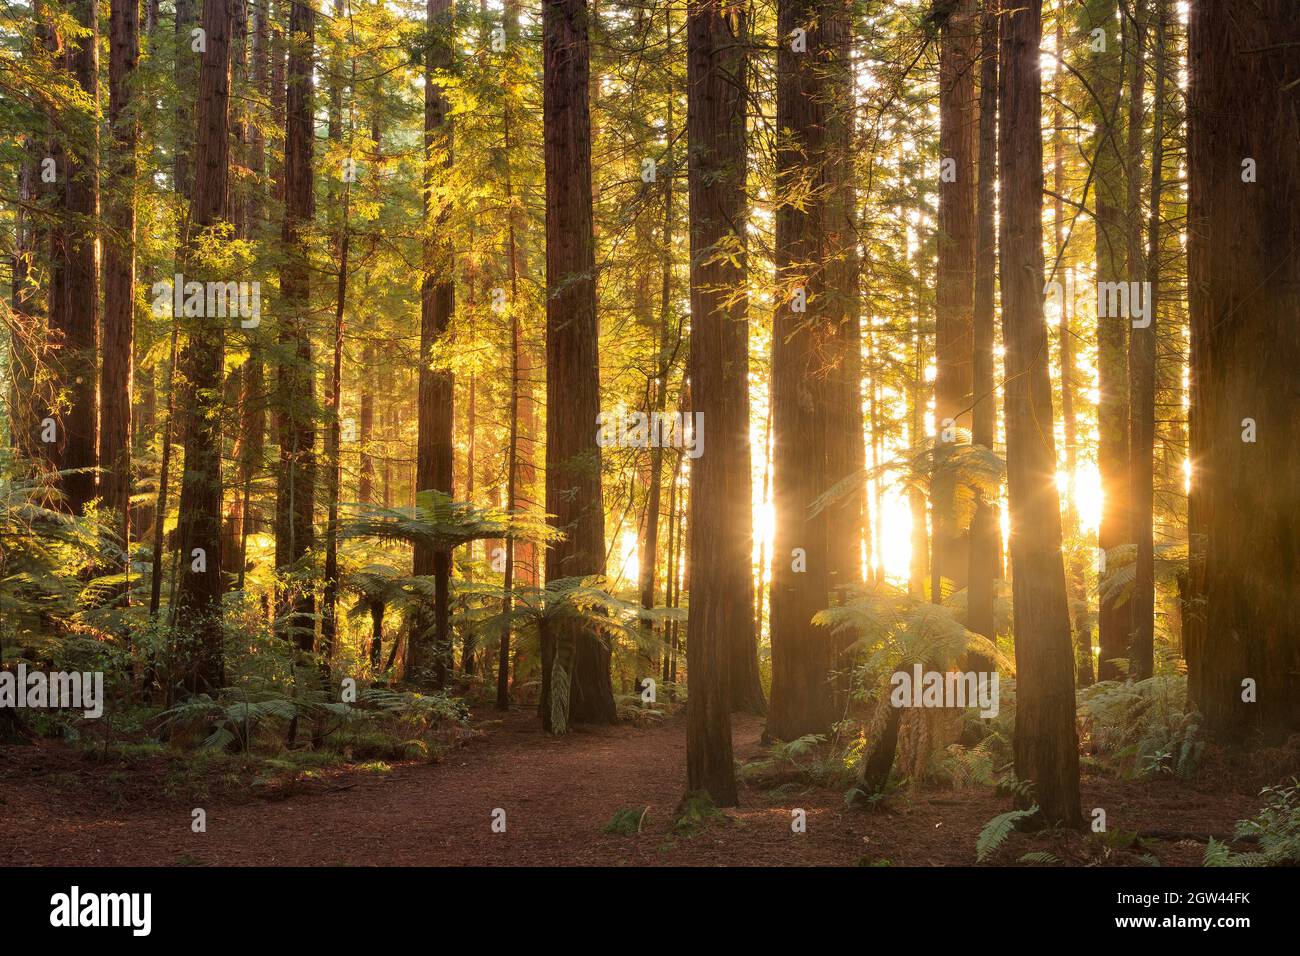 La lumière du soleil couchant se diffuse entre les troncs des séquoias de Californie dans la forêt de Whakarewarewa, Rotorua, Nouvelle-Zélande Banque D'Images